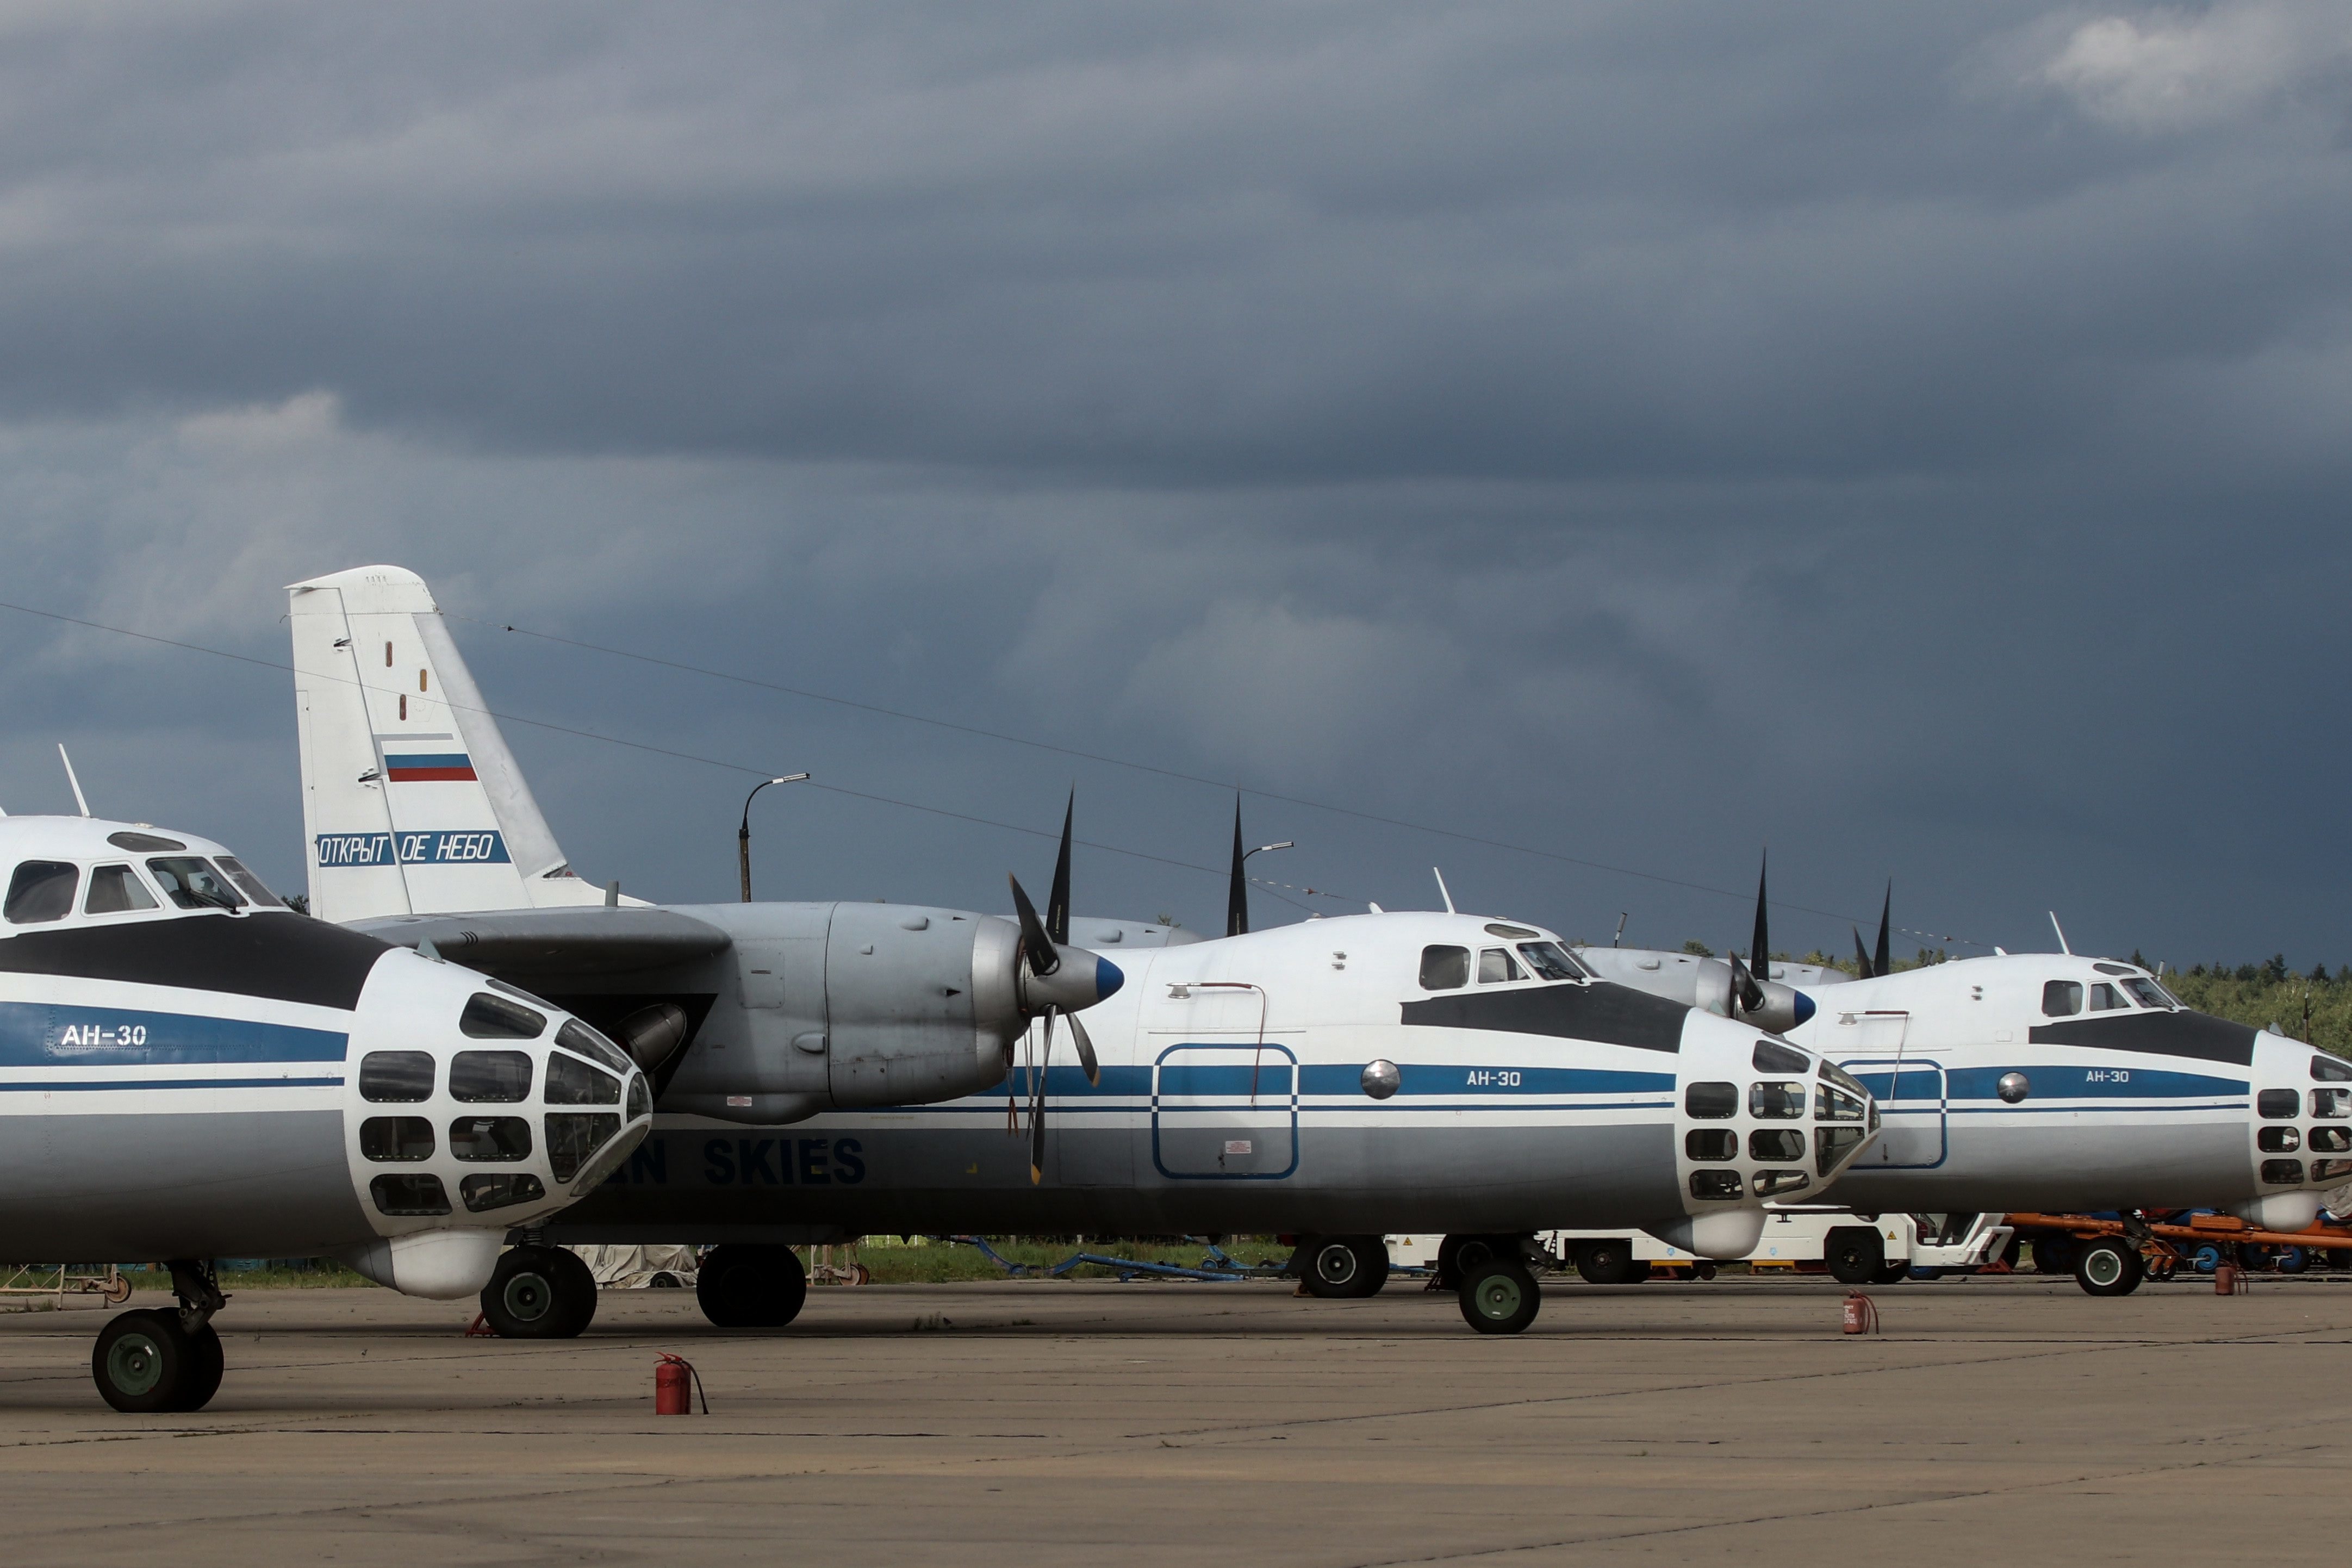 Flugzeuge des Typs Antonow An-30, die für Aufklärungsflüge unter dem "Open Skies"-Vertrag ausgerüstet sind, an einem Moskauer Flughafen. | picture alliance / Yury Kirsanov